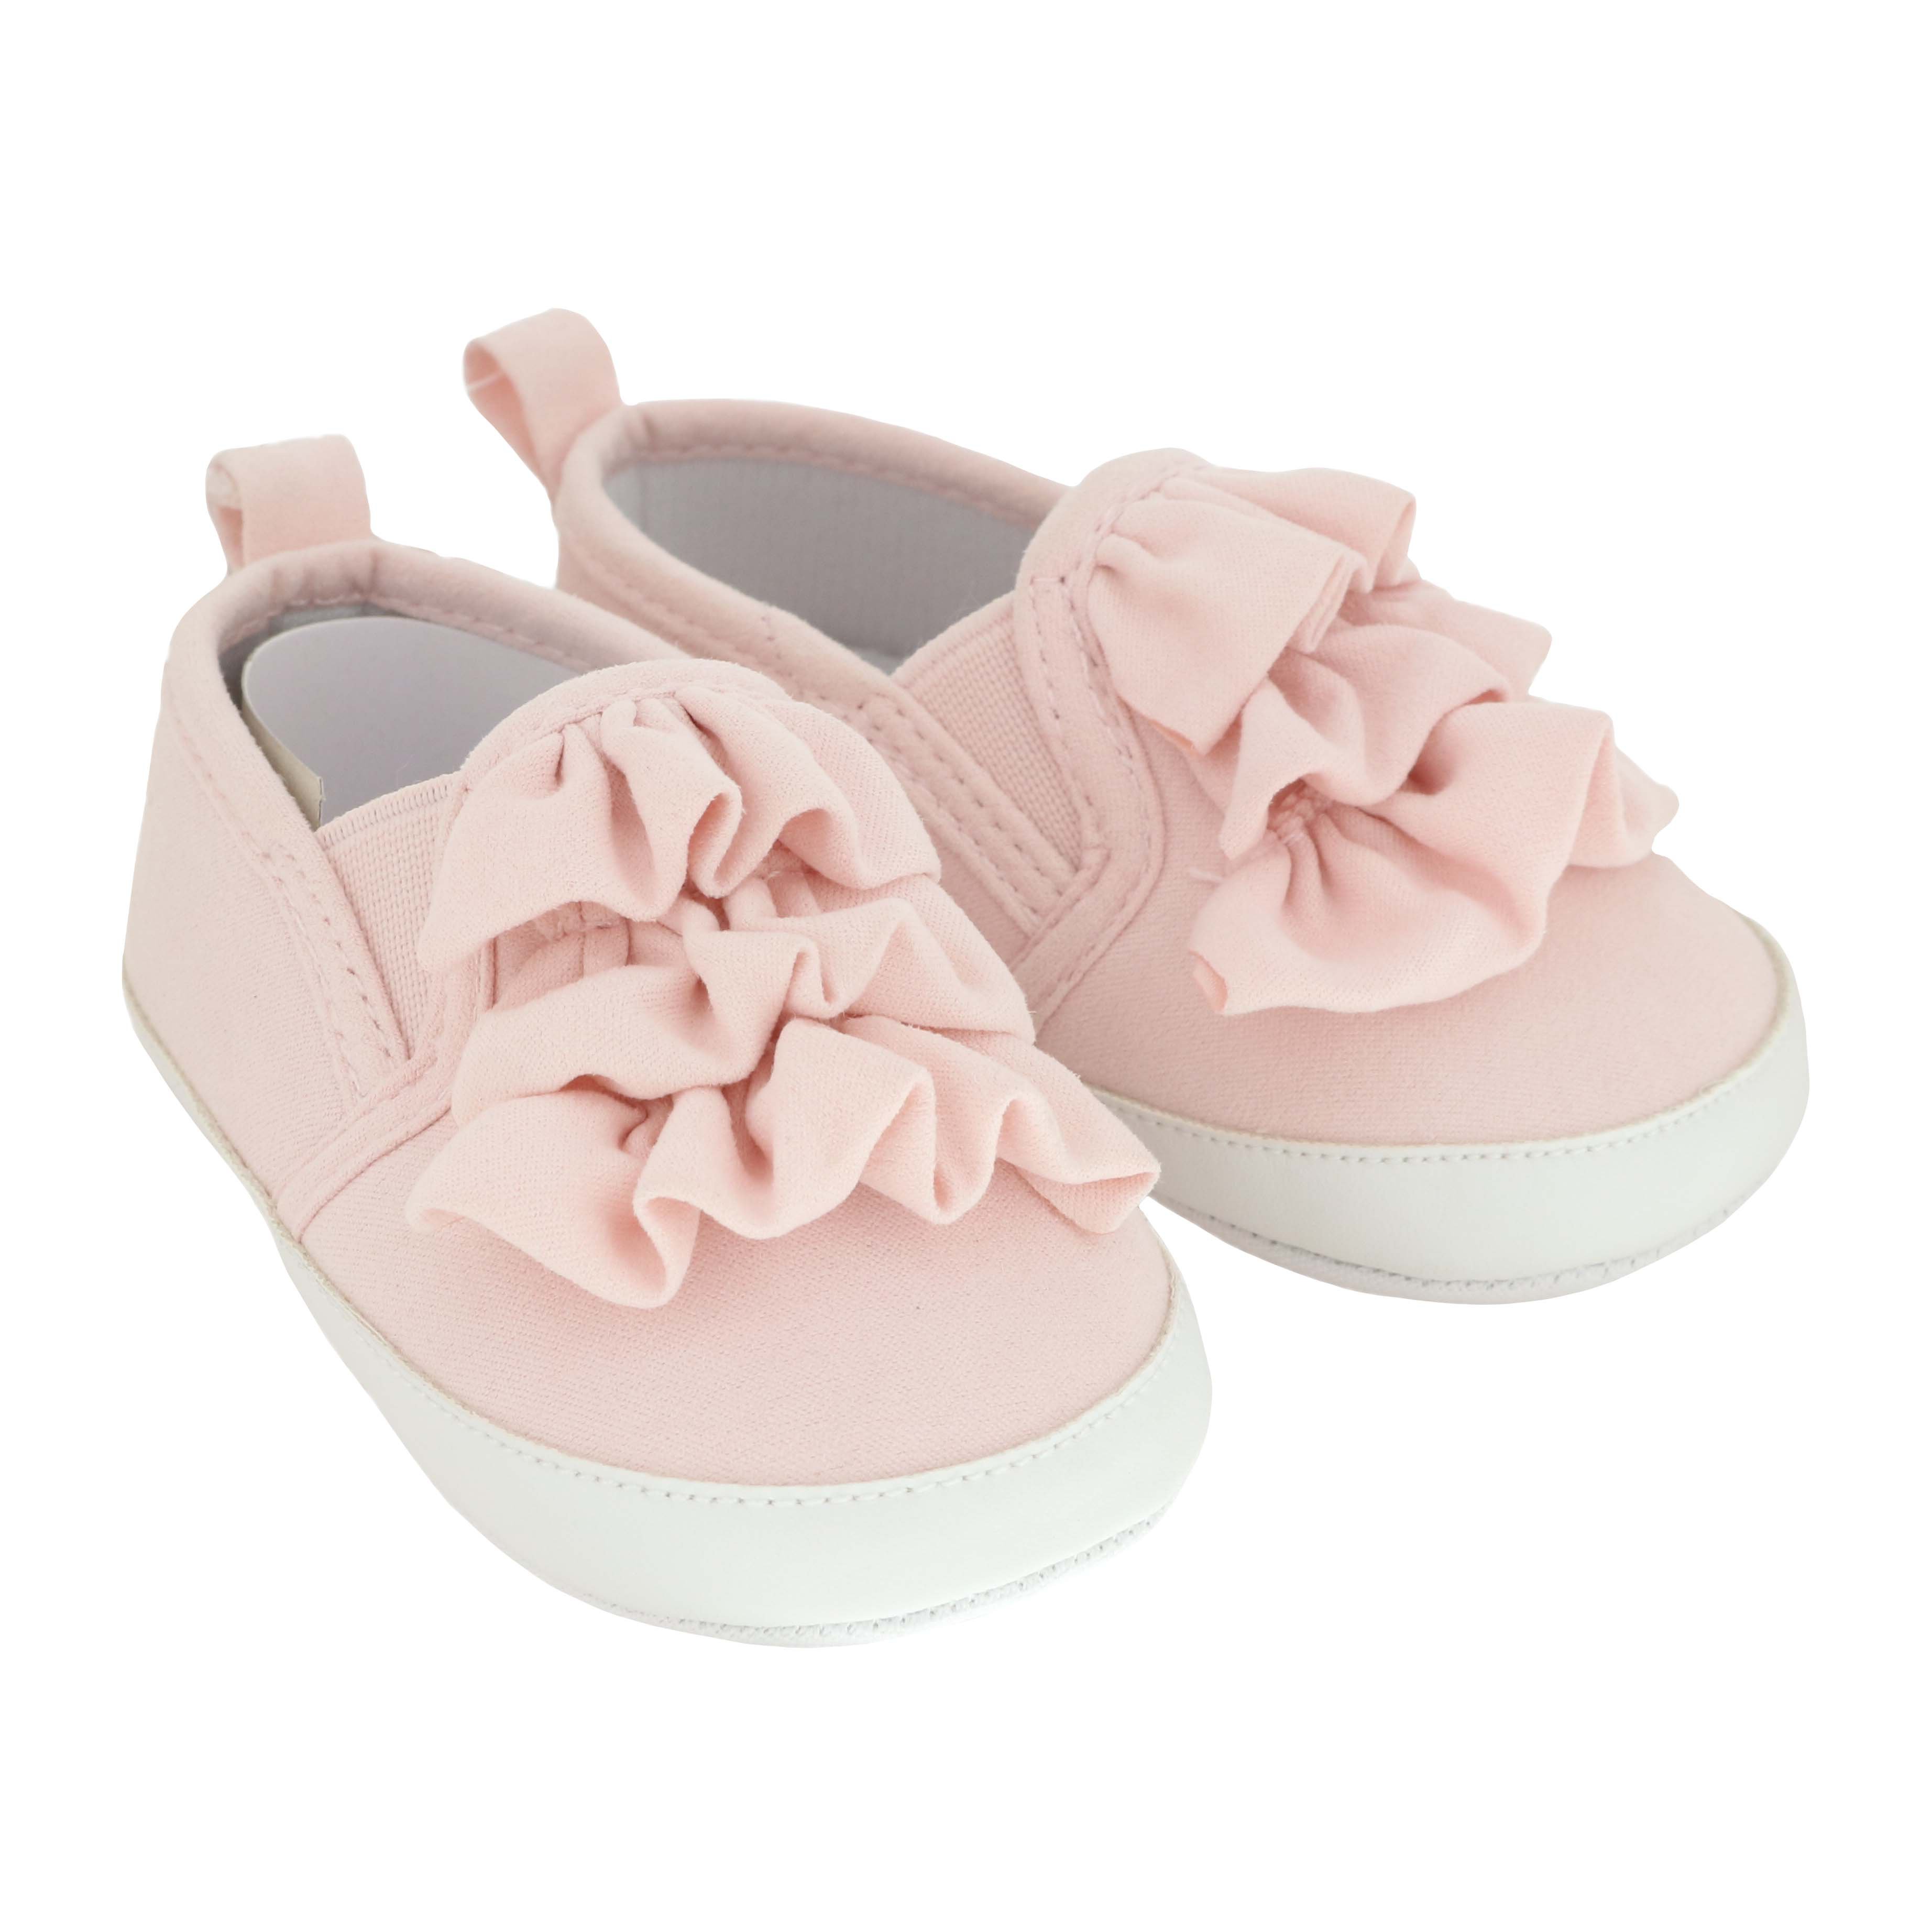 infant shoes size 3